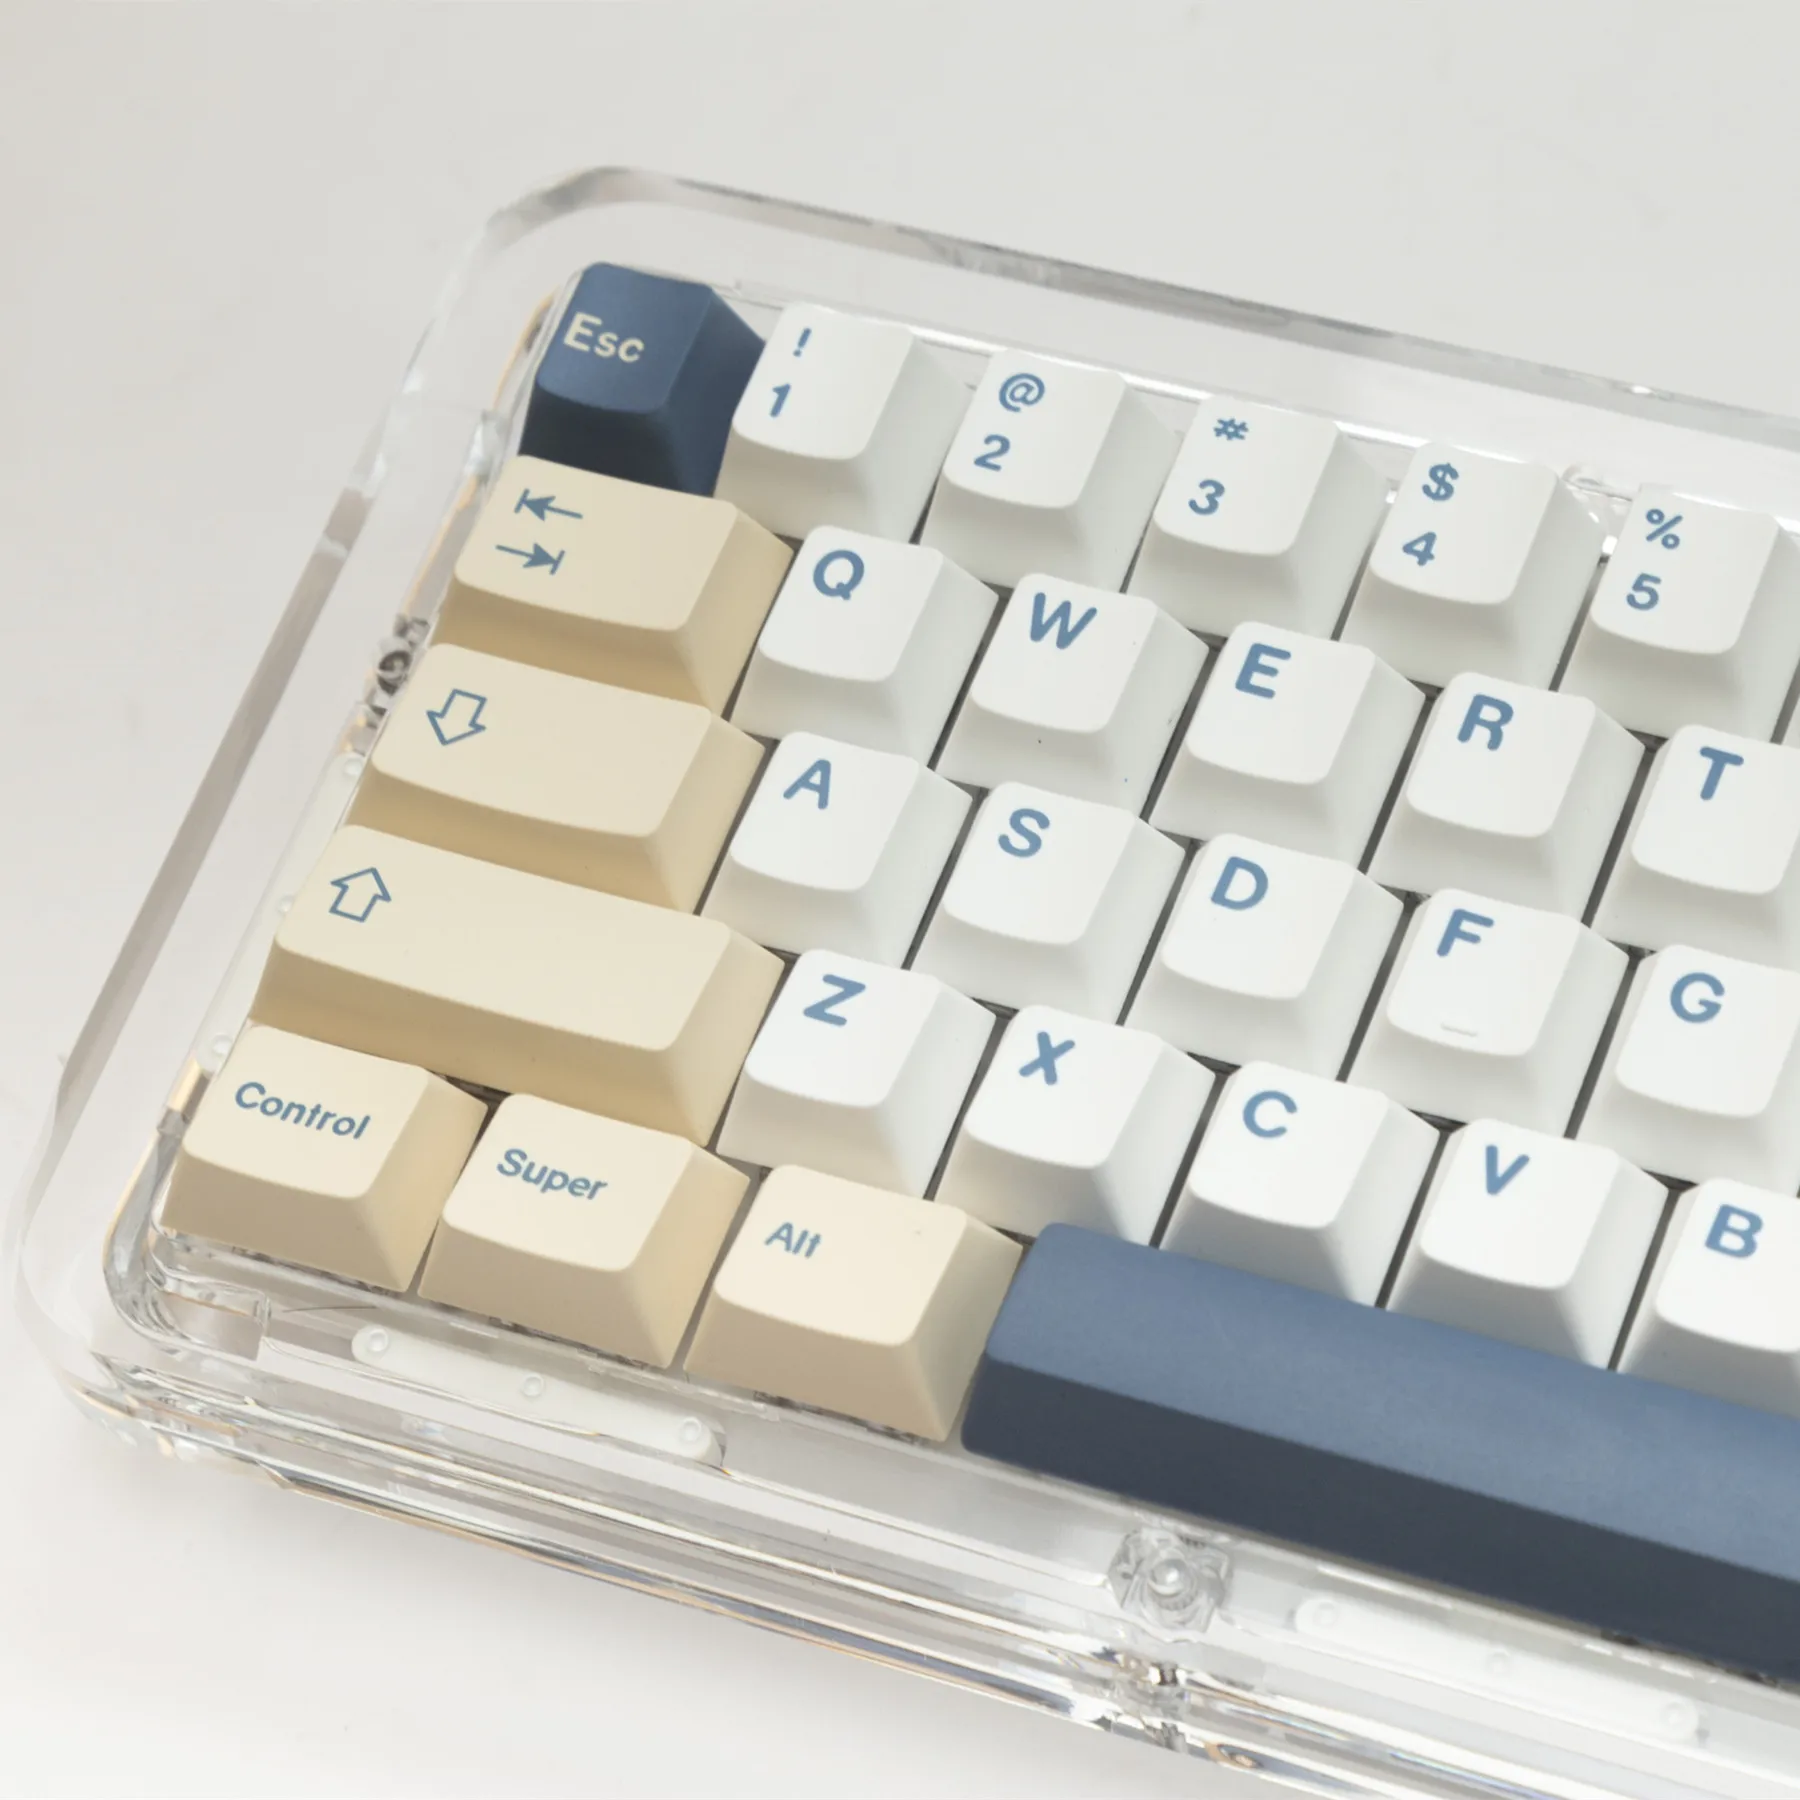 

Полный комплект клавиш GMK Birch143, колпачки для клавиш PBT, сублимационный Черри профиль для переключателей MX 60% 80%, механическая клавиатура с раскладкой